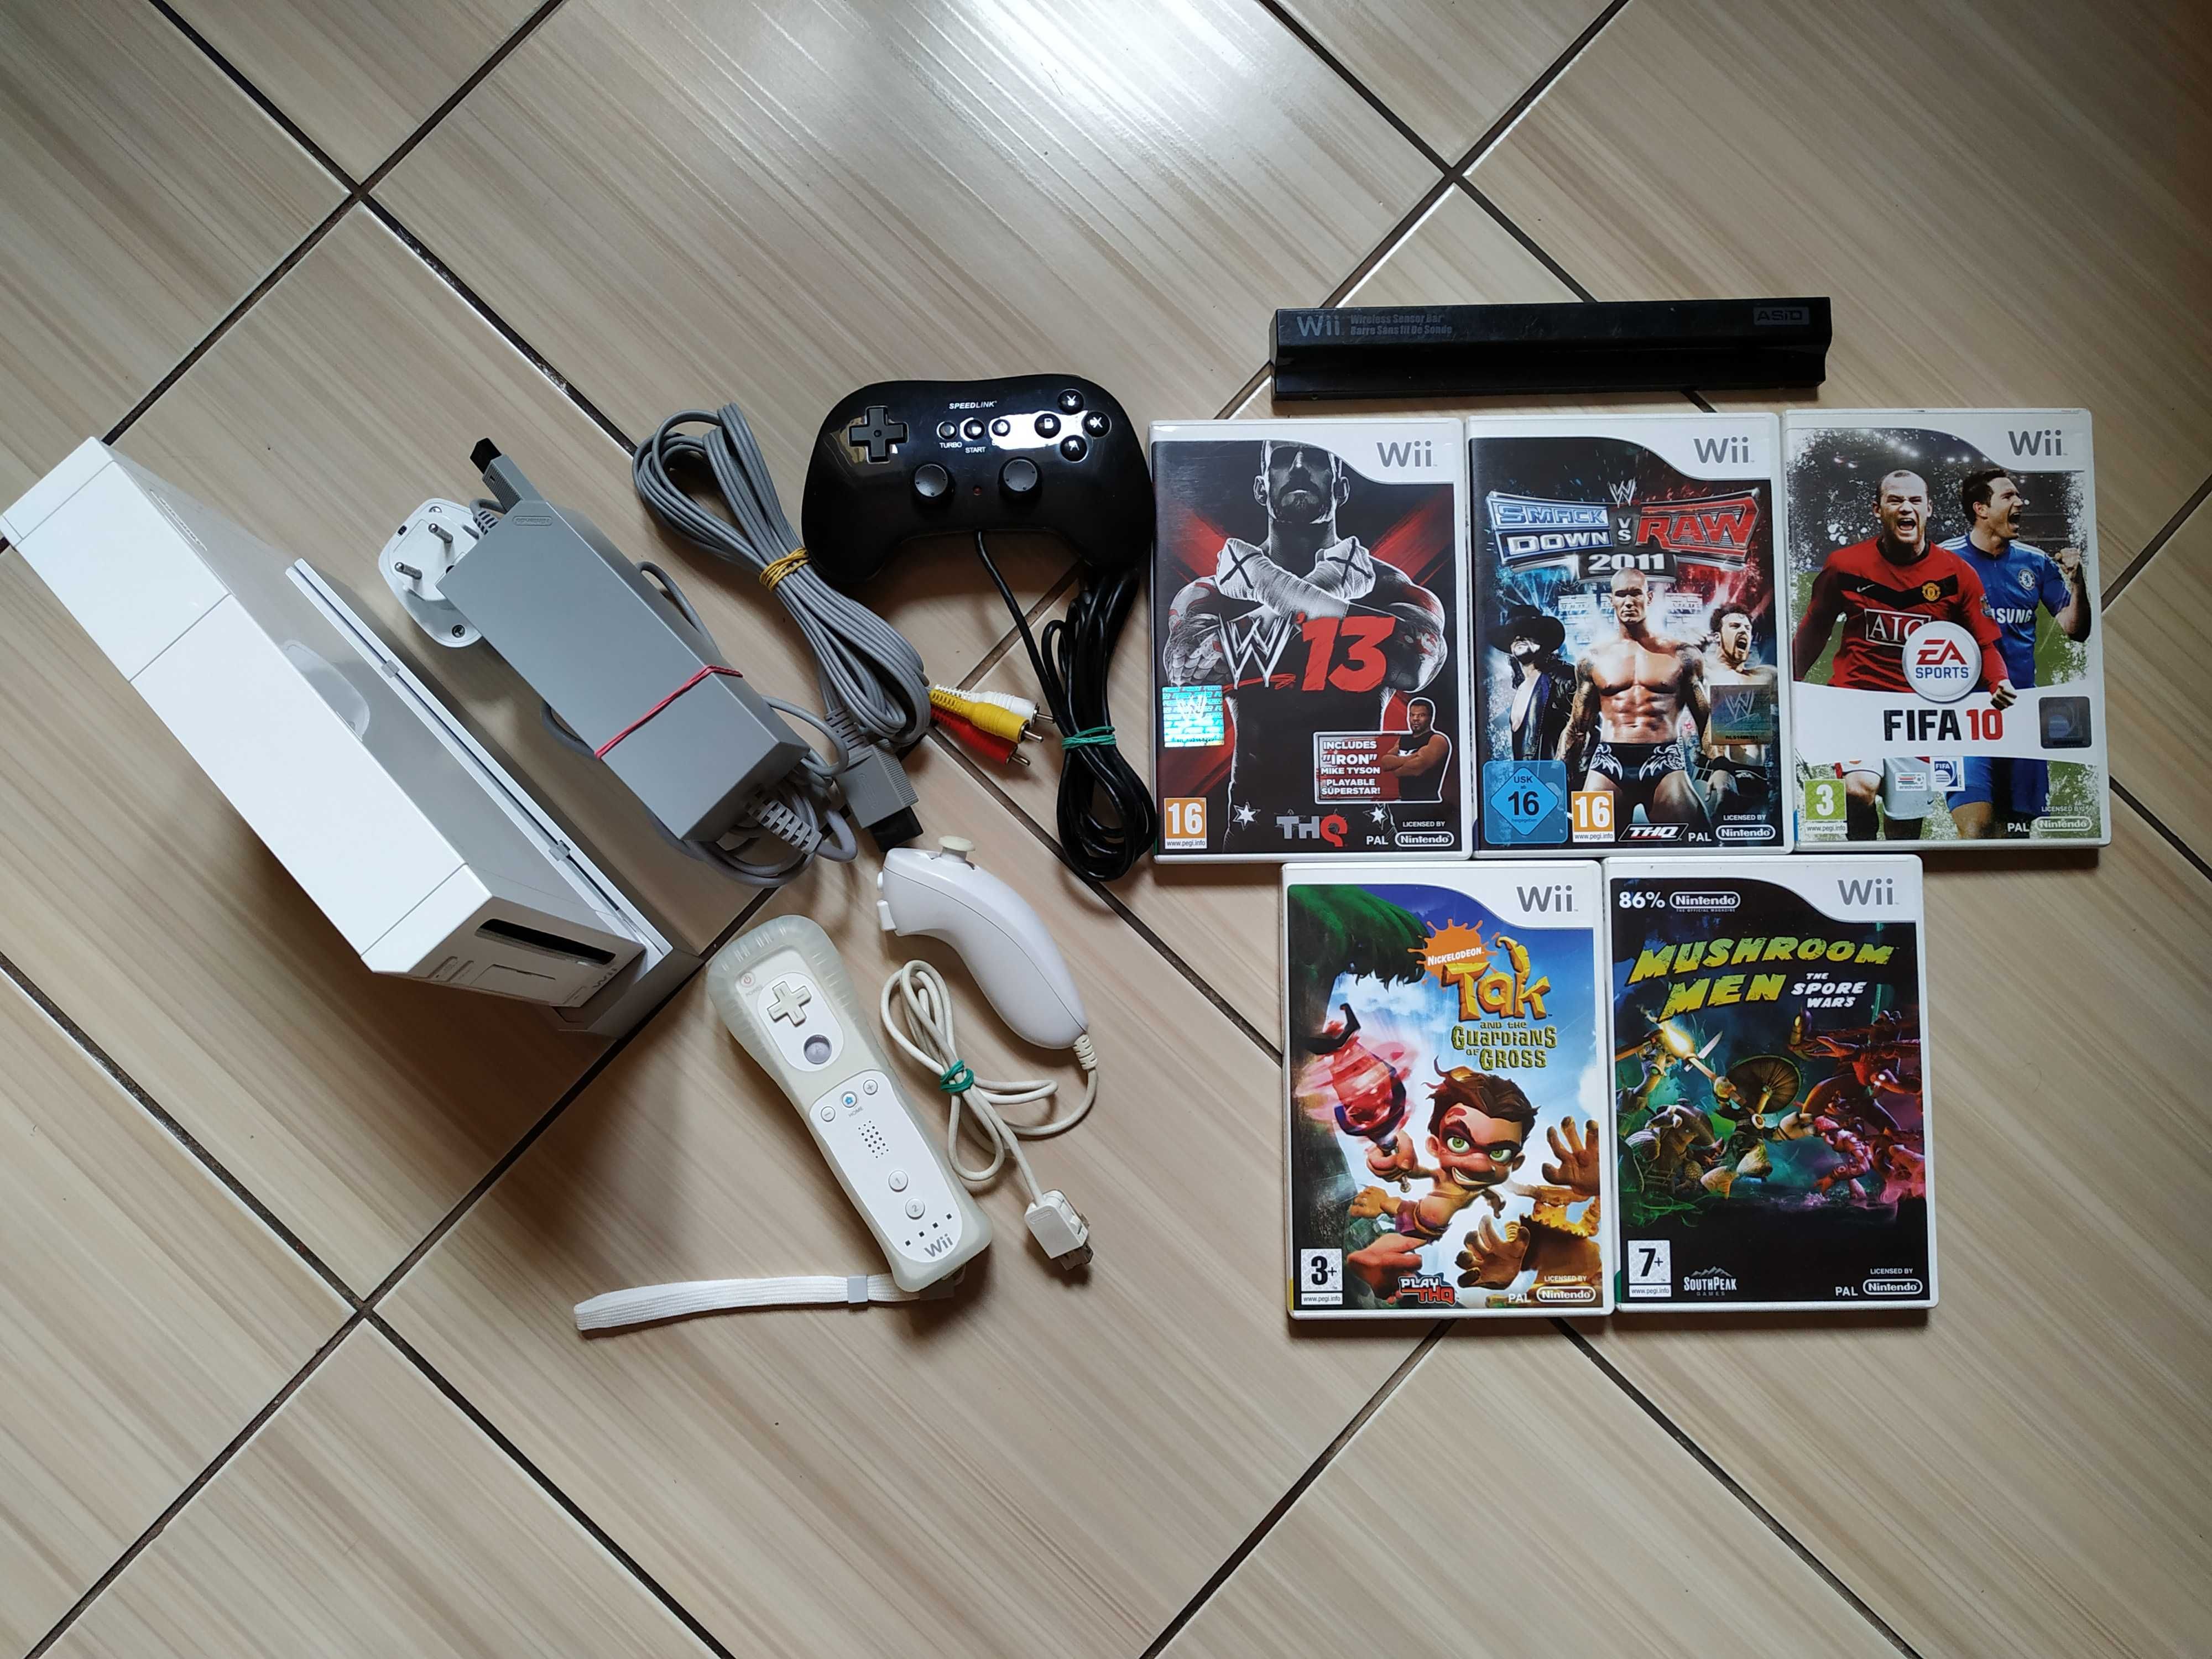 Nintendo Wii completa cu toate accesoriile originale si jocuri incluse